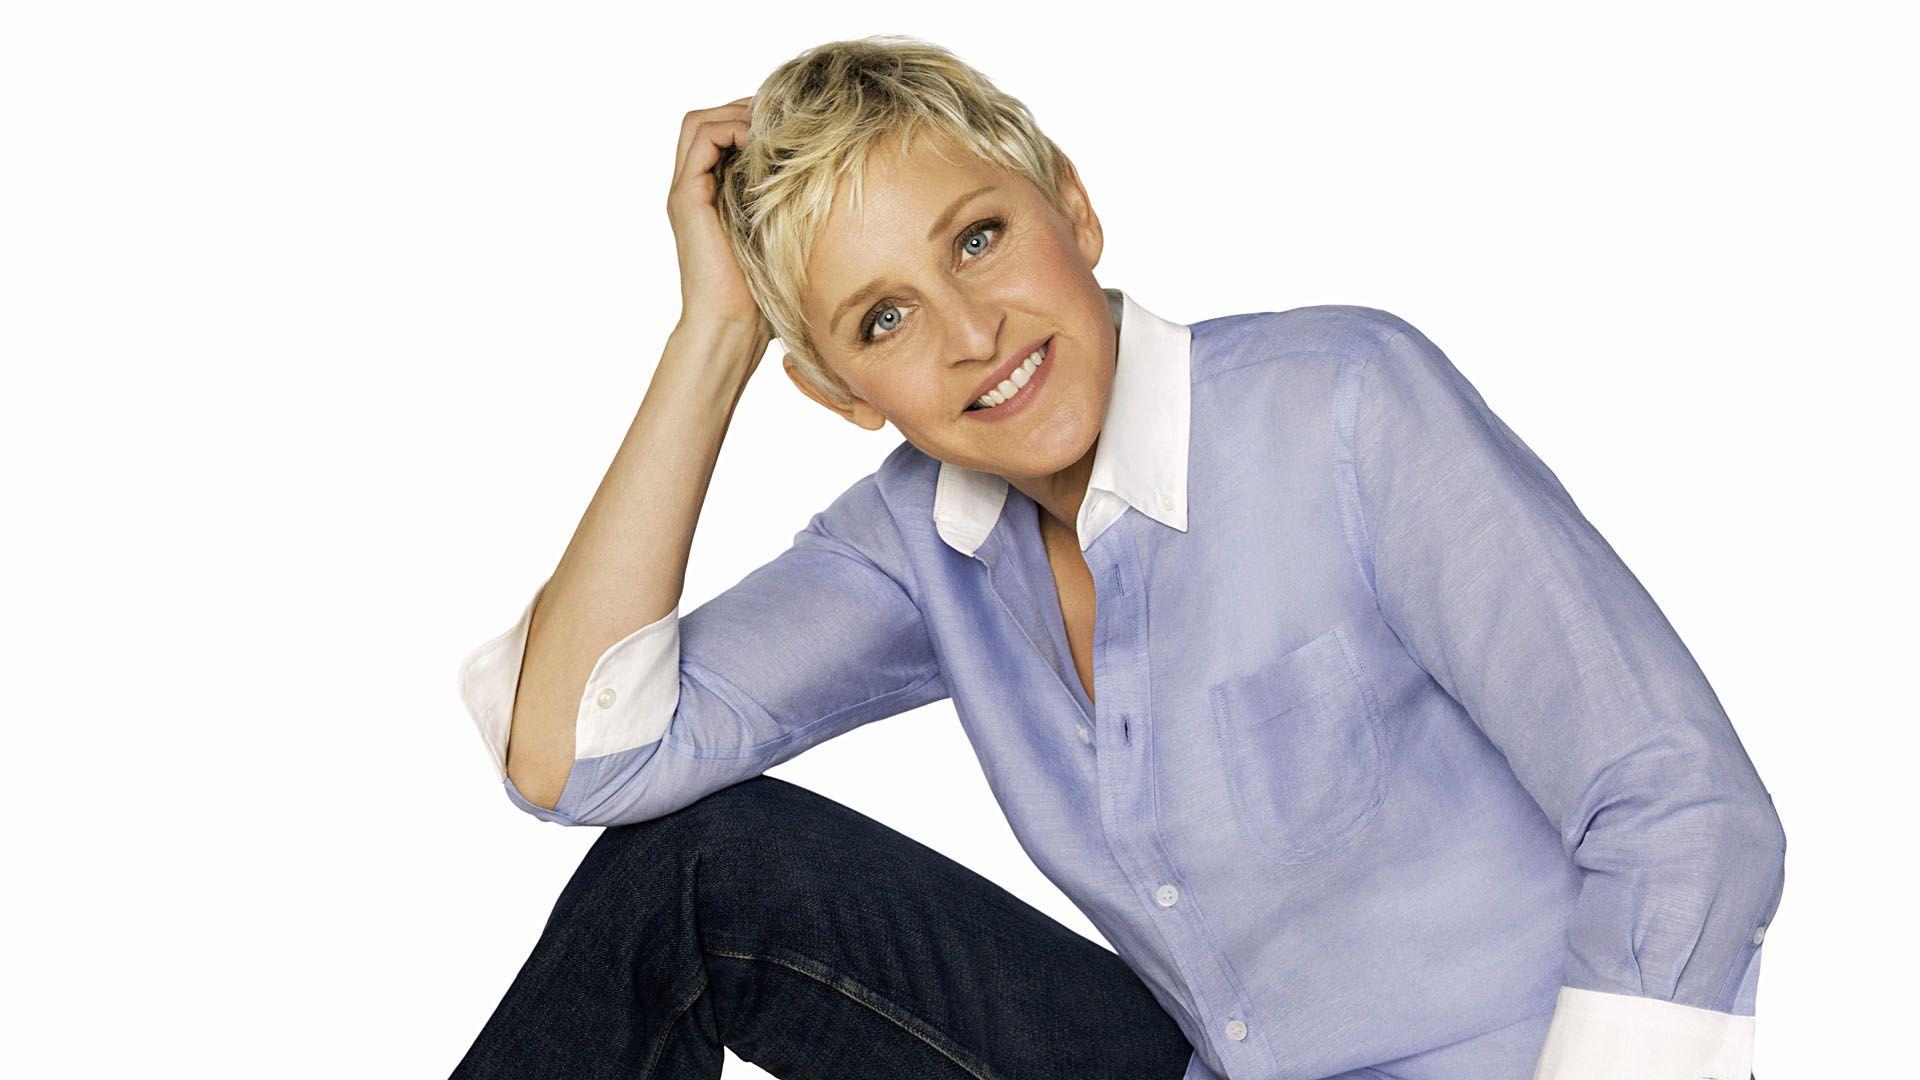 Ellen DeGeneres Desktop Wallpaper 58965 1920x1080 px